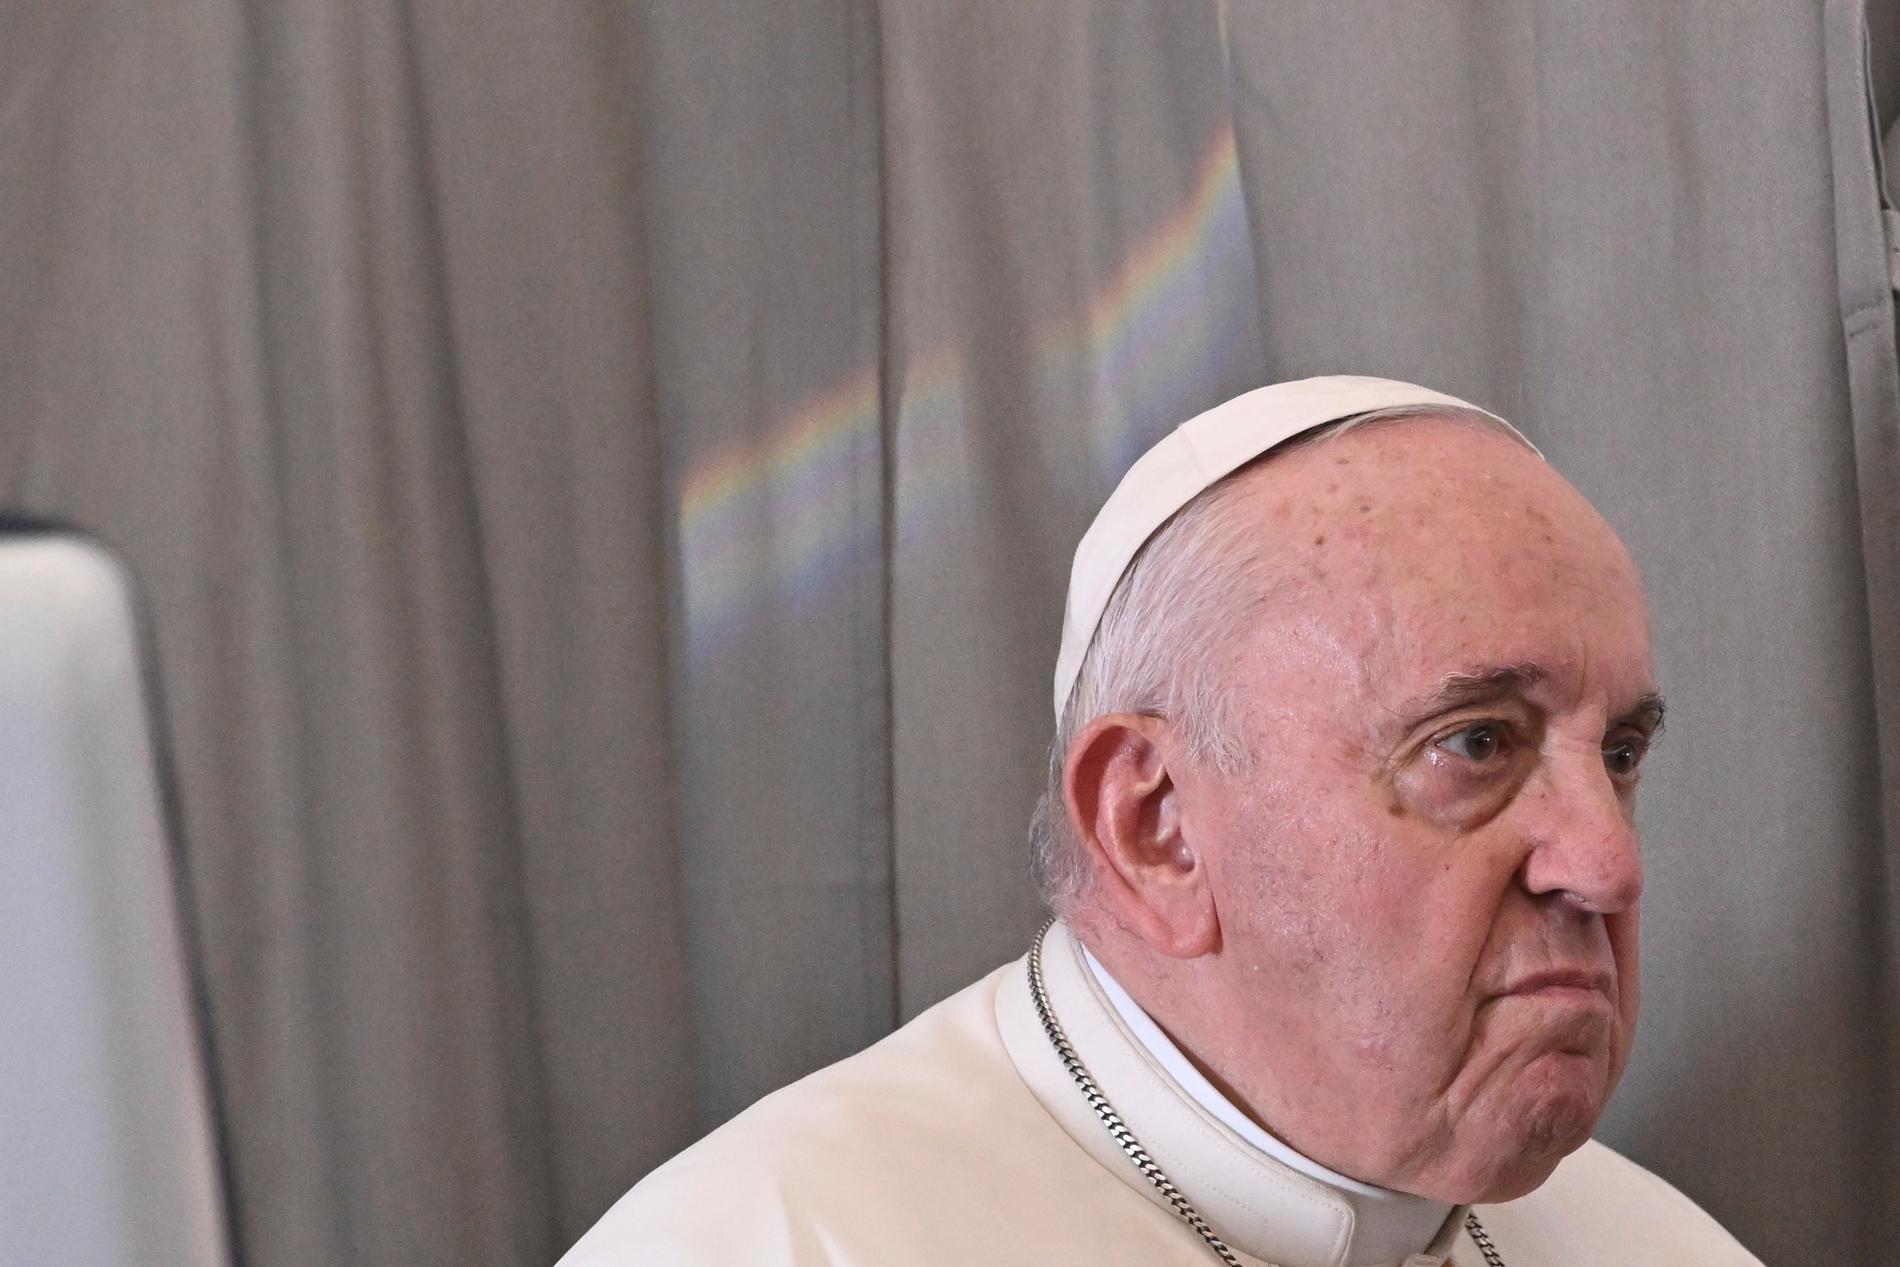 Tusenvis av rapporter om seksuelle overgrep i den katolske kirken har dukket opp rundt om i verden de siste årene, og pave Frans er under hardt press for å begrense skadene fra skandalen. I 2019 lovet han å utrydde pedofili i kirken. 